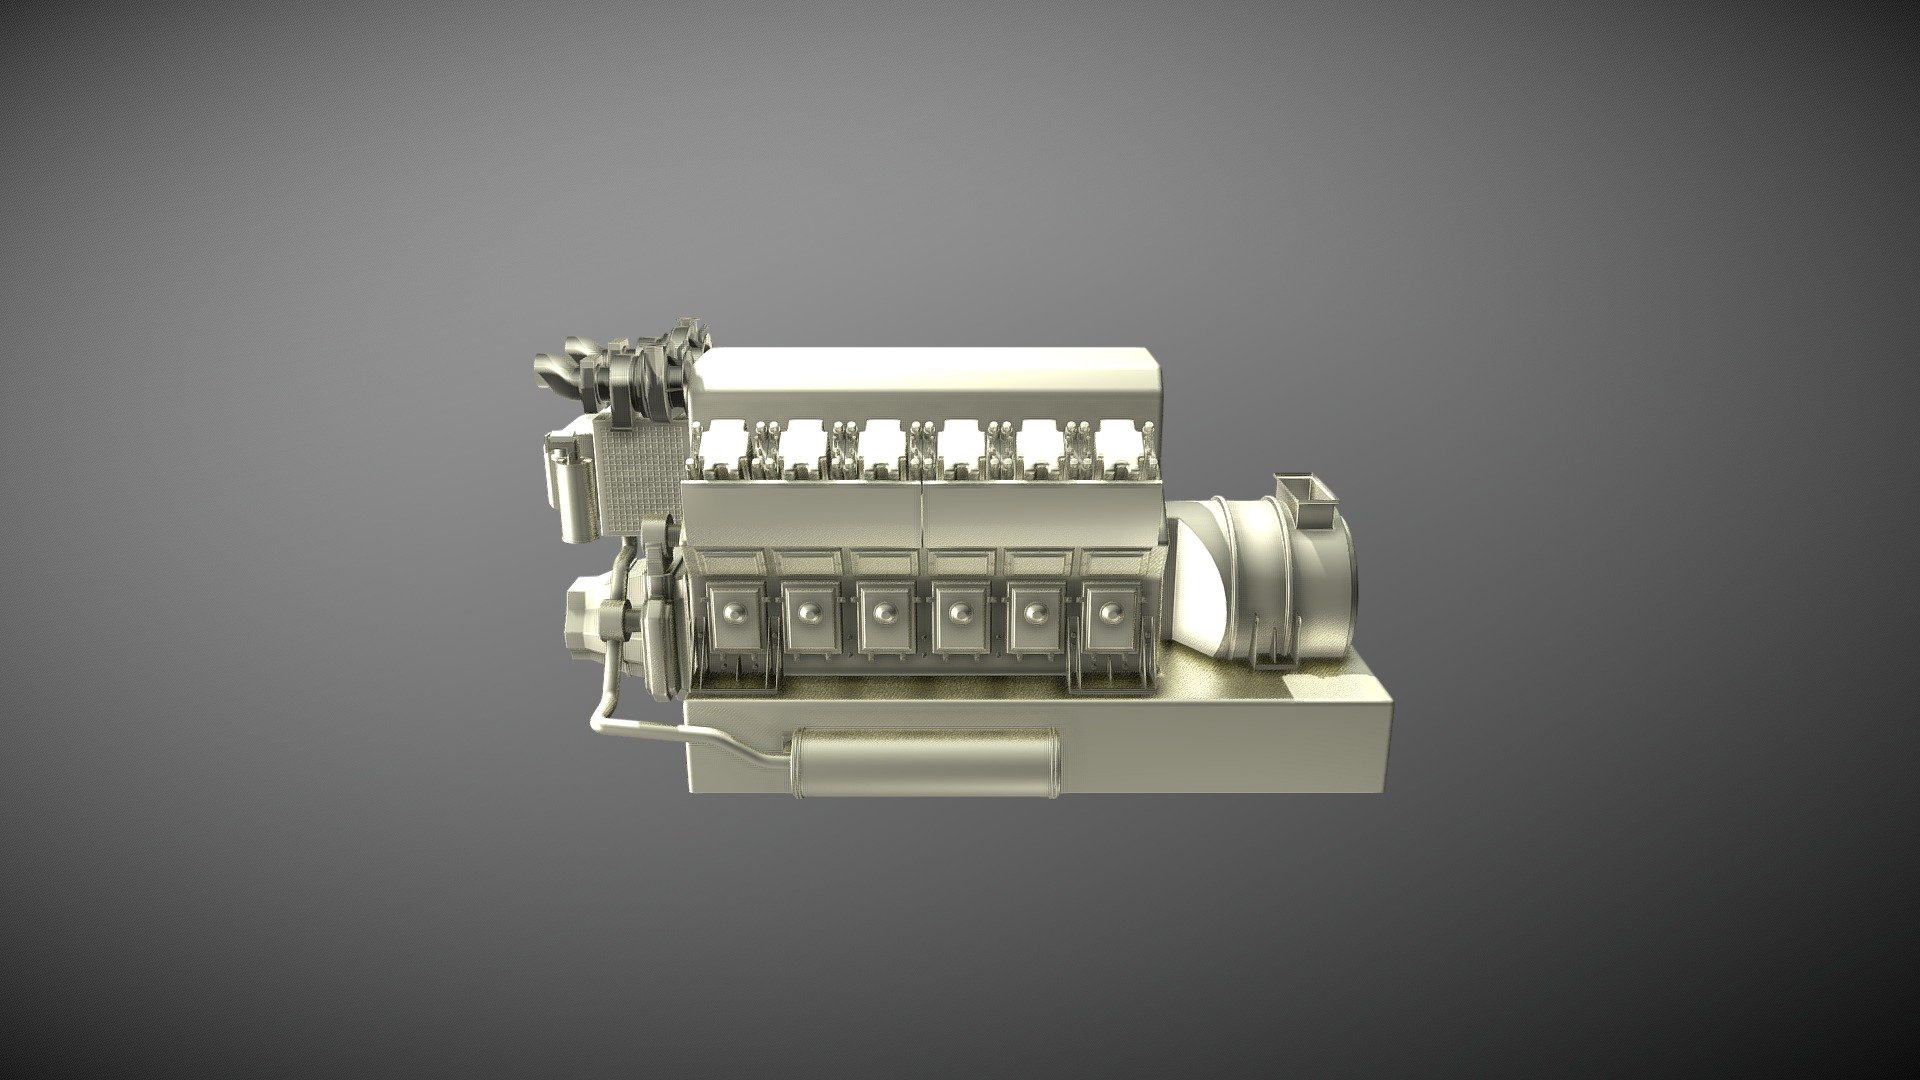 Diesel Engine D500 - Diesel Engine D500 - 3D model by shuldeshov 3d model